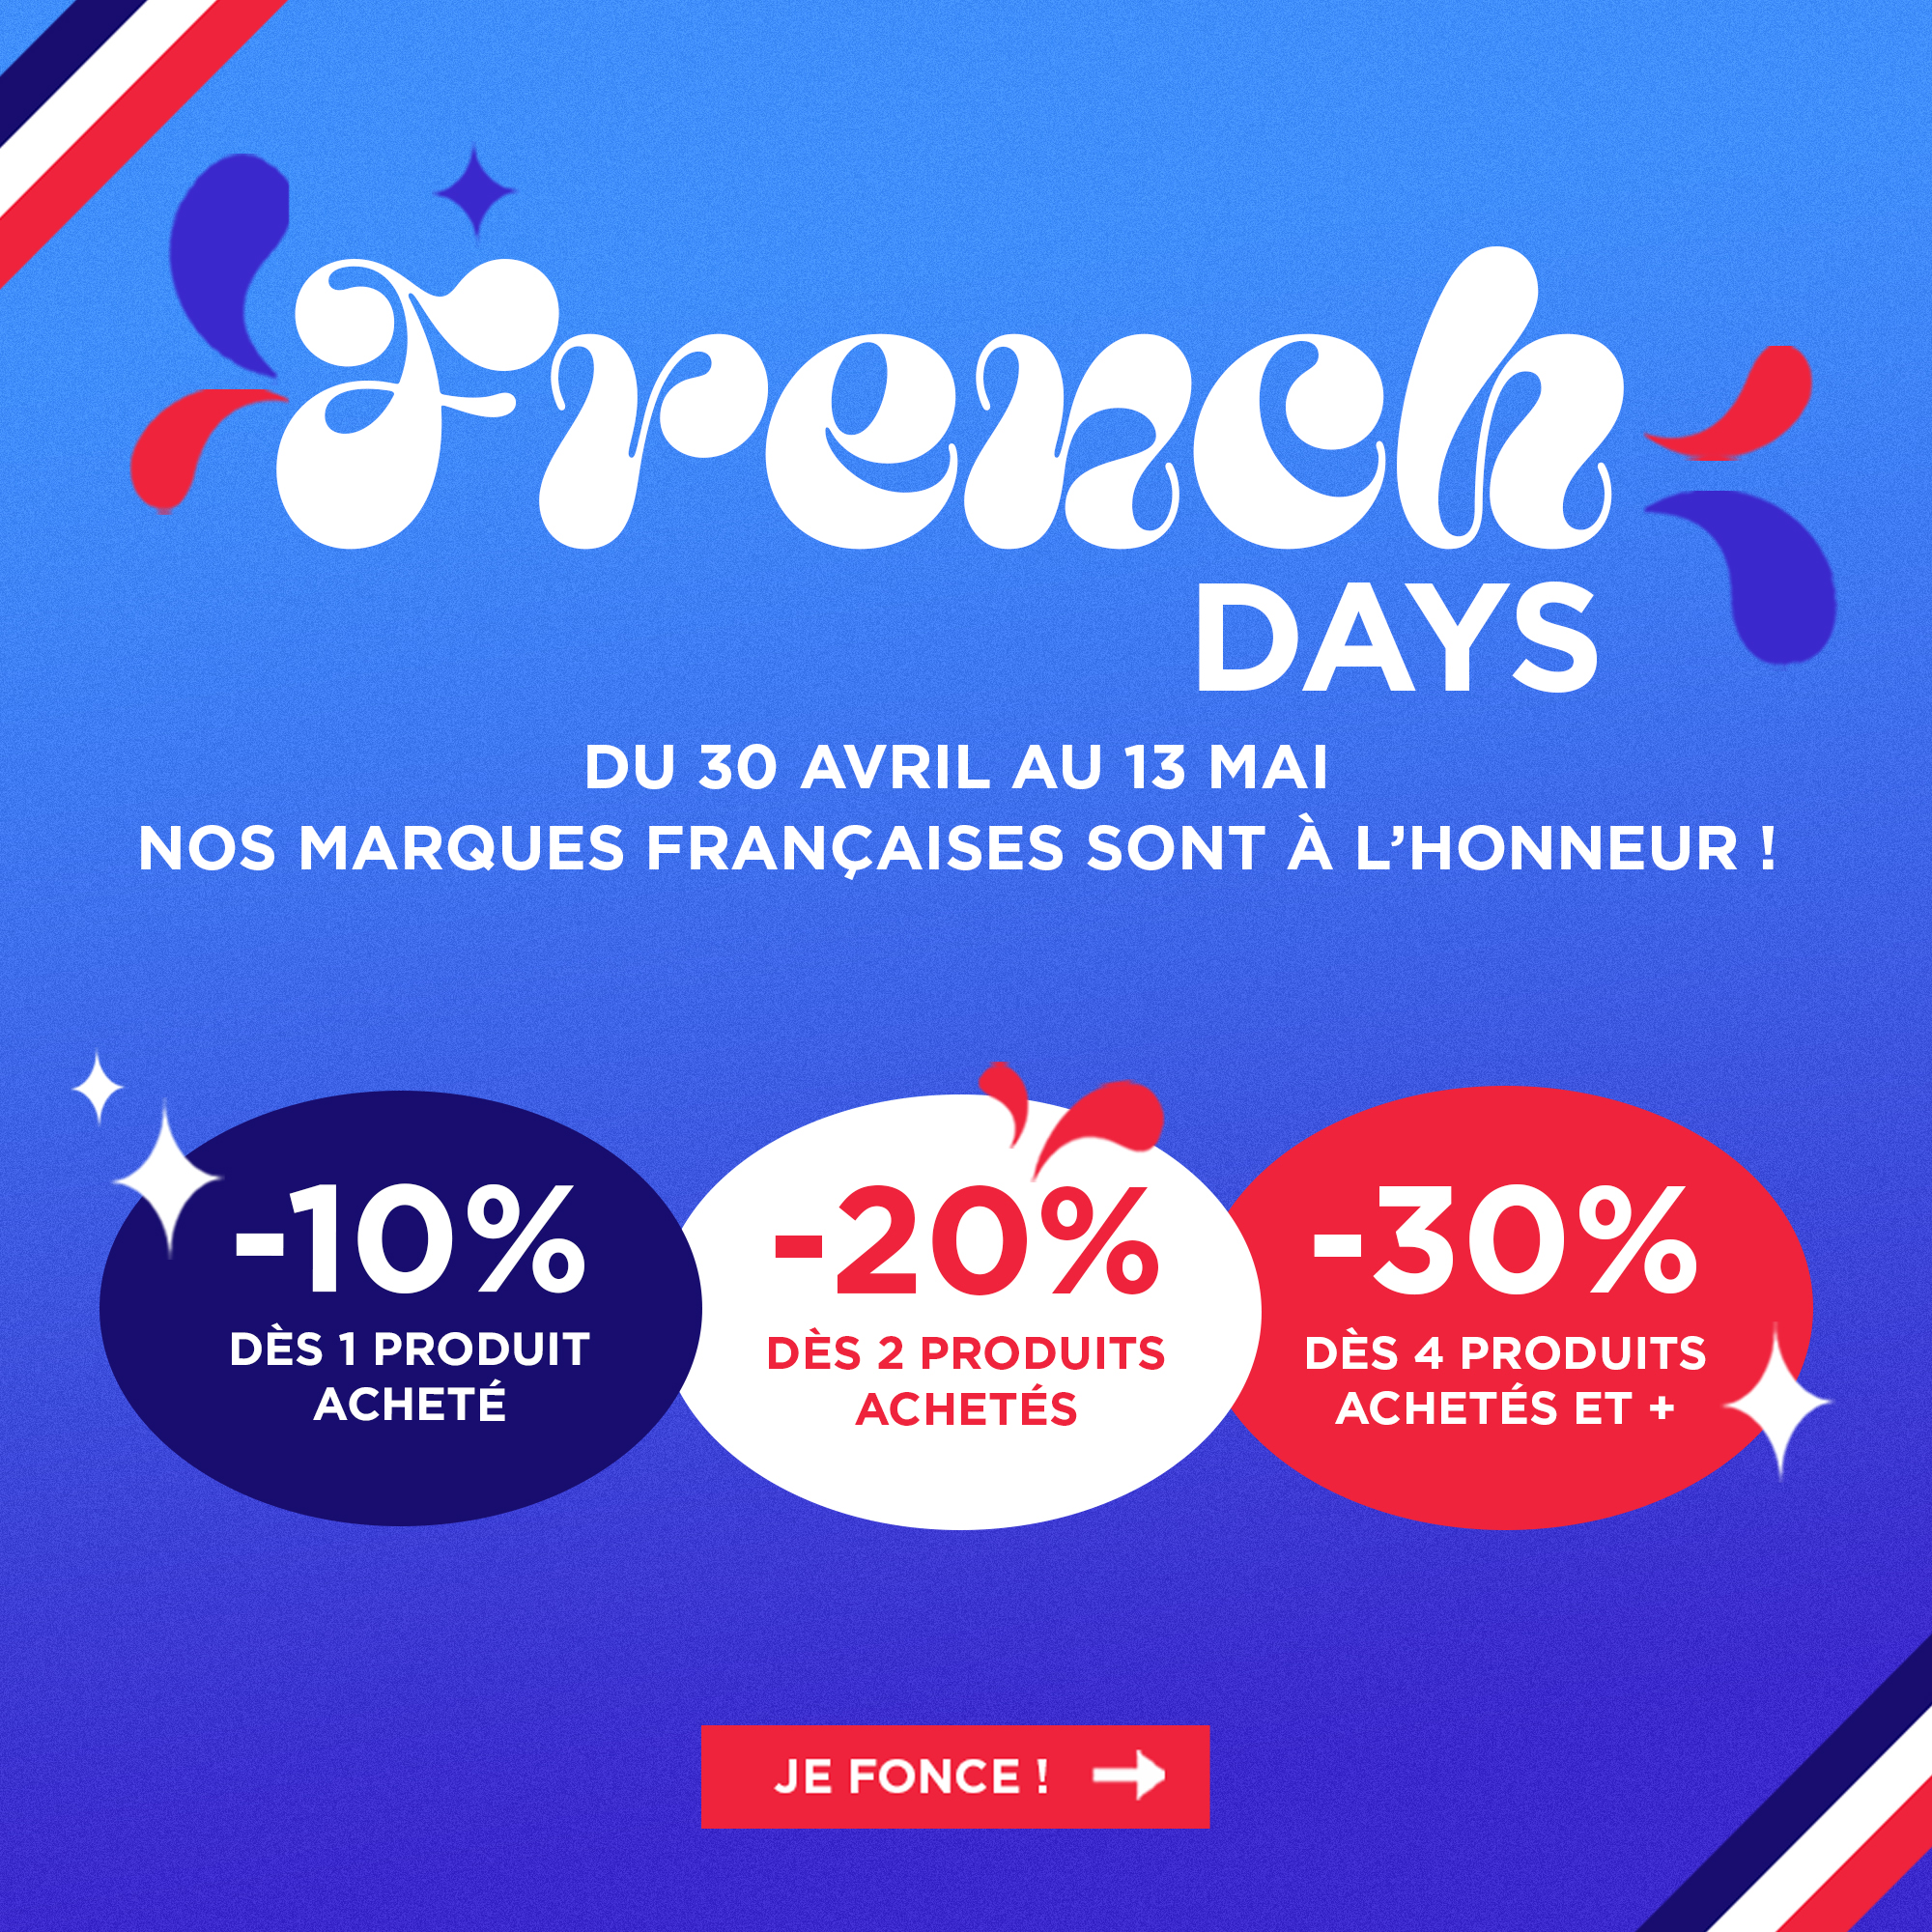 French Days : Du 30 au 7 Mai profitez de nos bons plans jusqu'à 30% de remise sur toutes nos marques françaises !